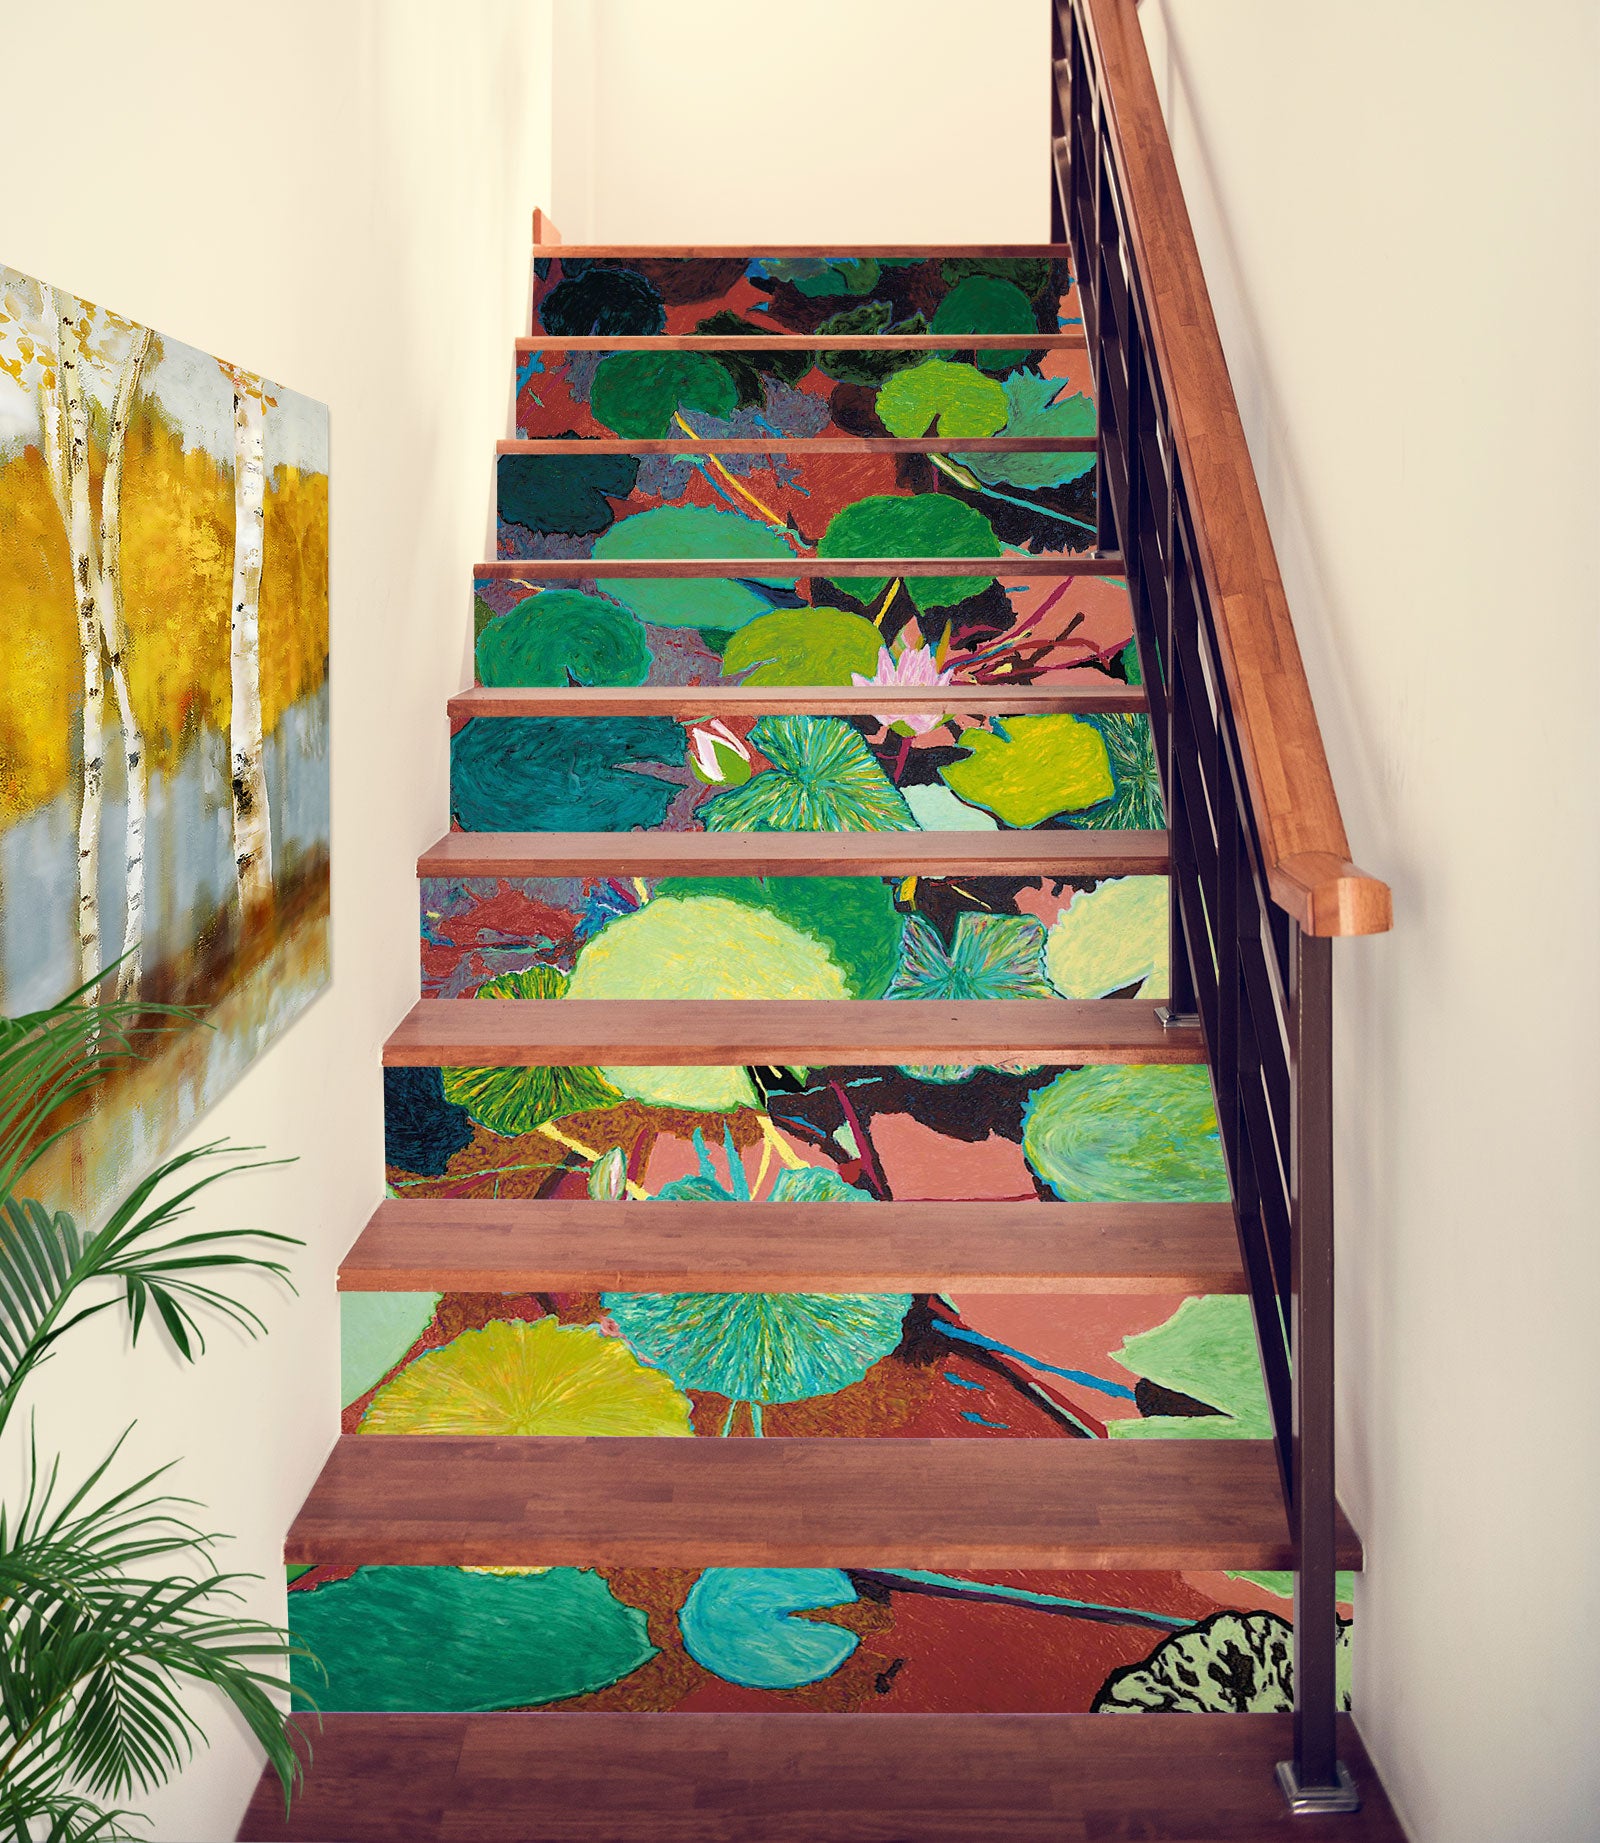 3D Lotus Leaf Painting 90138 Allan P. Friedlander Stair Risers